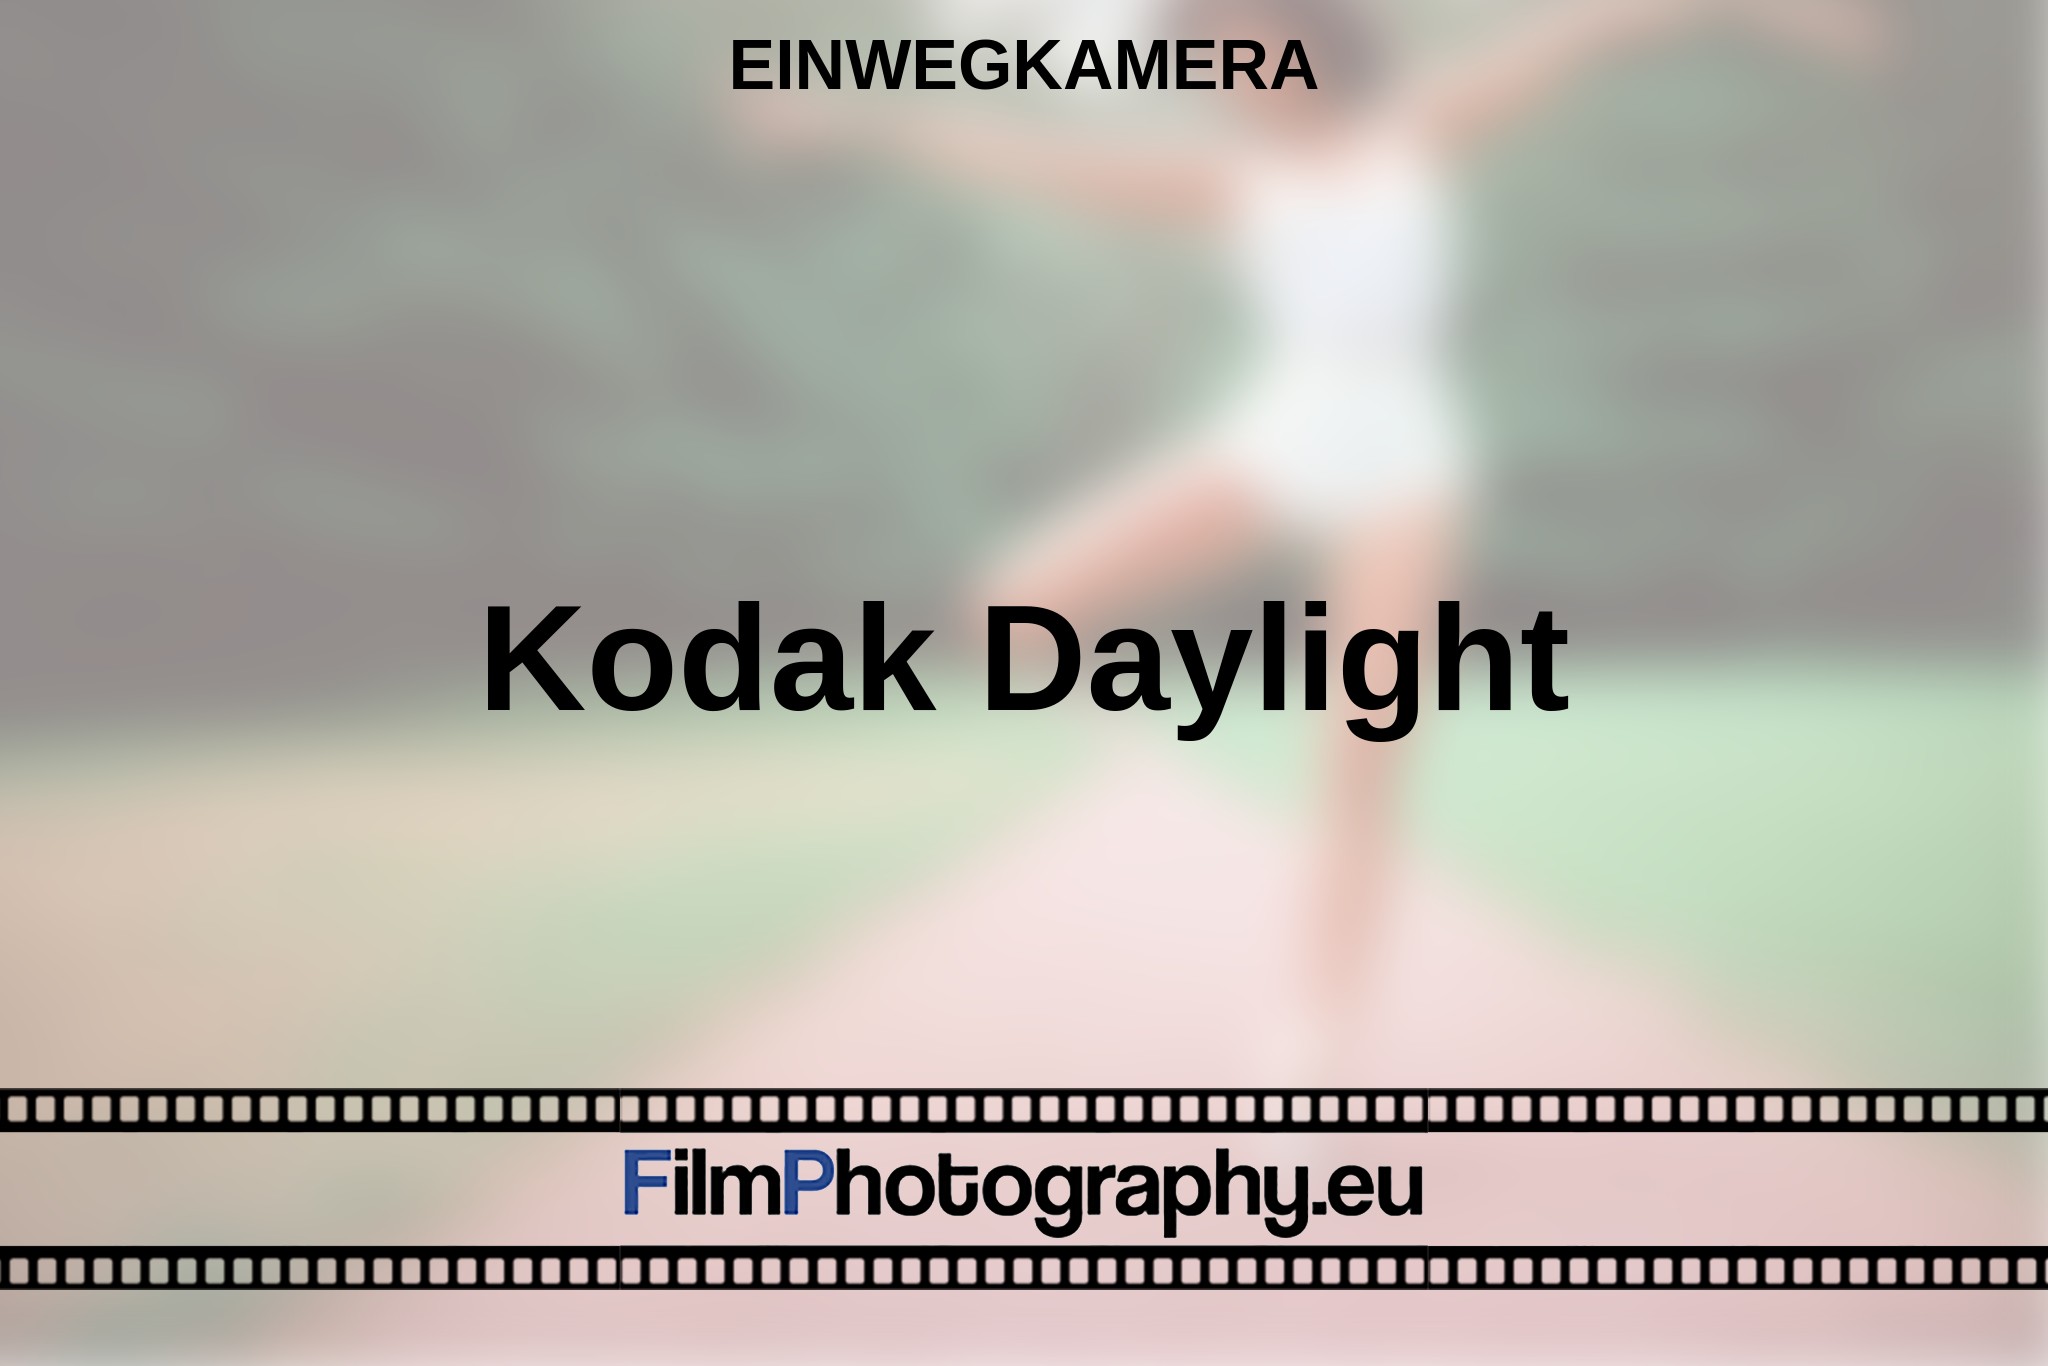 kodak-daylight-einwegkamera-bnv.jpg